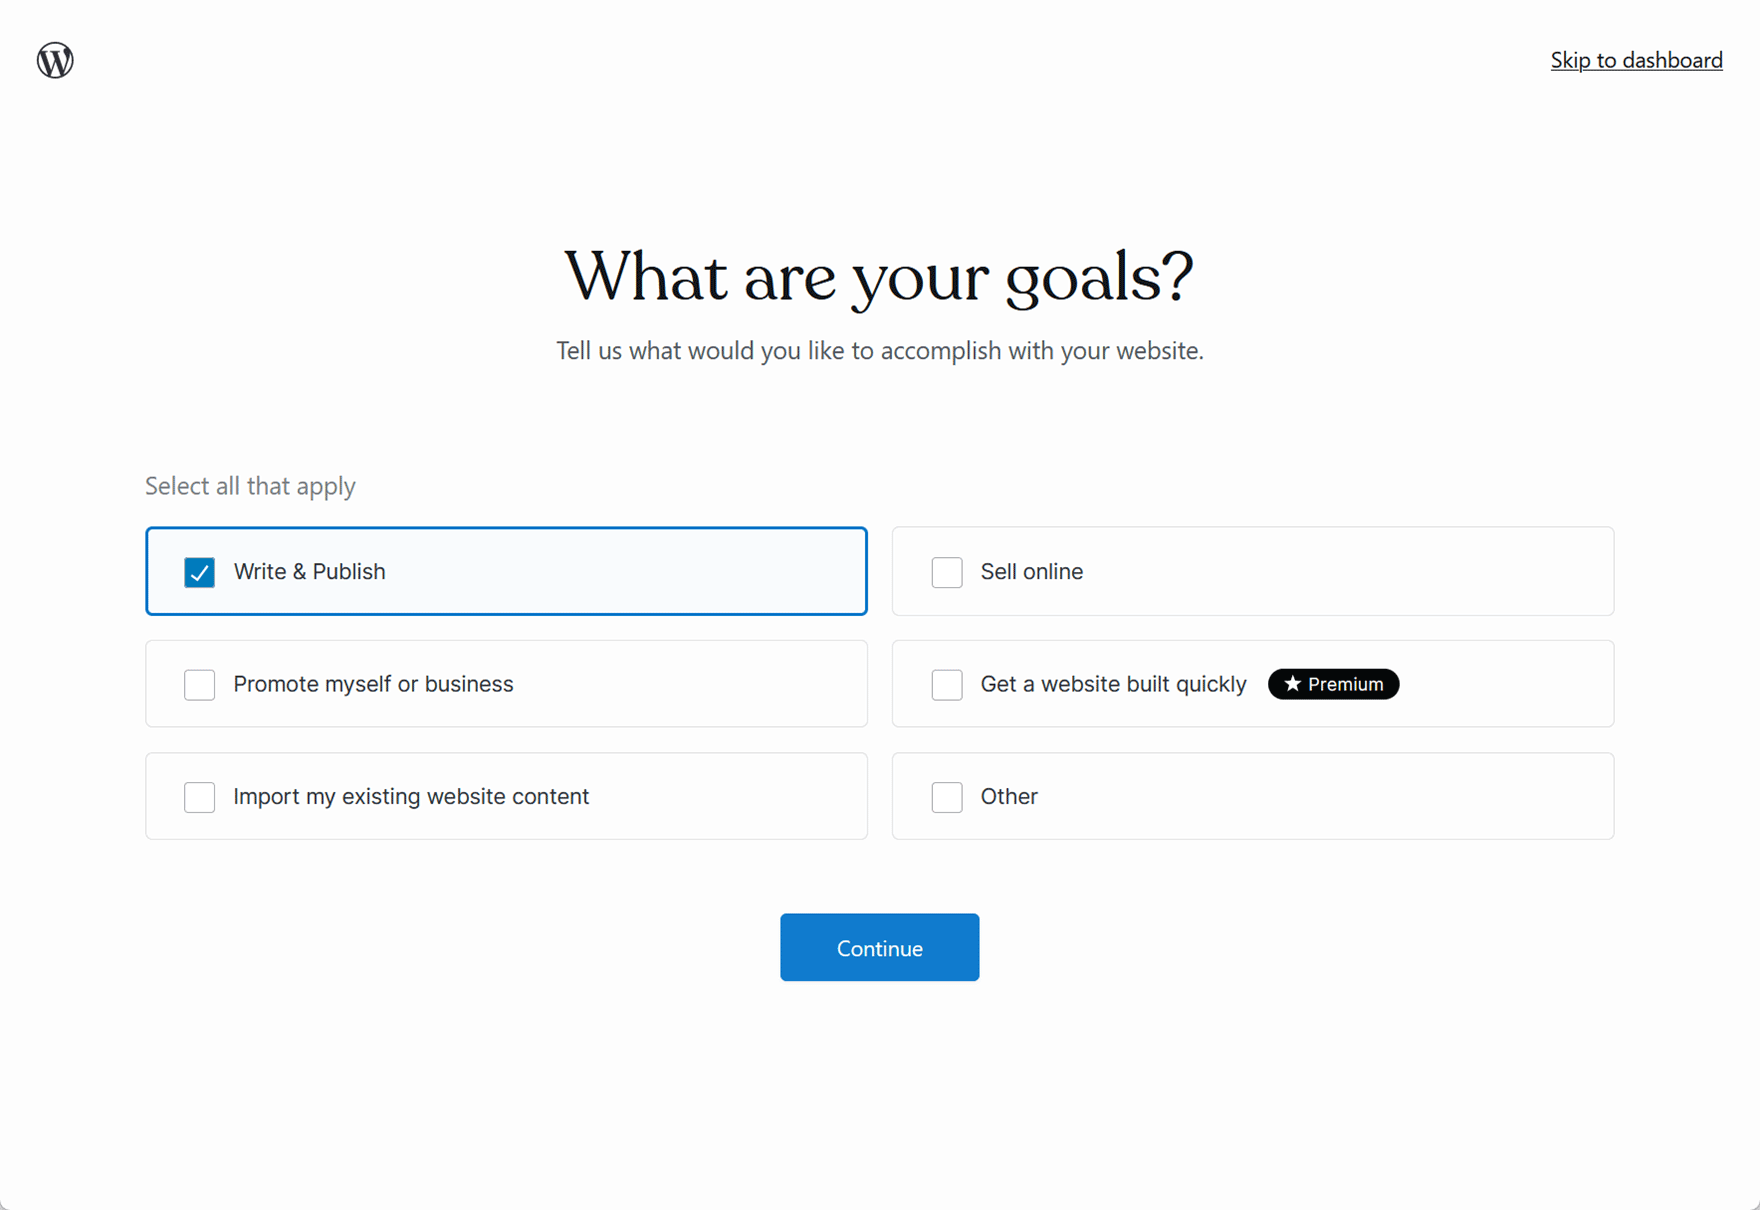 WordPress.com Goals